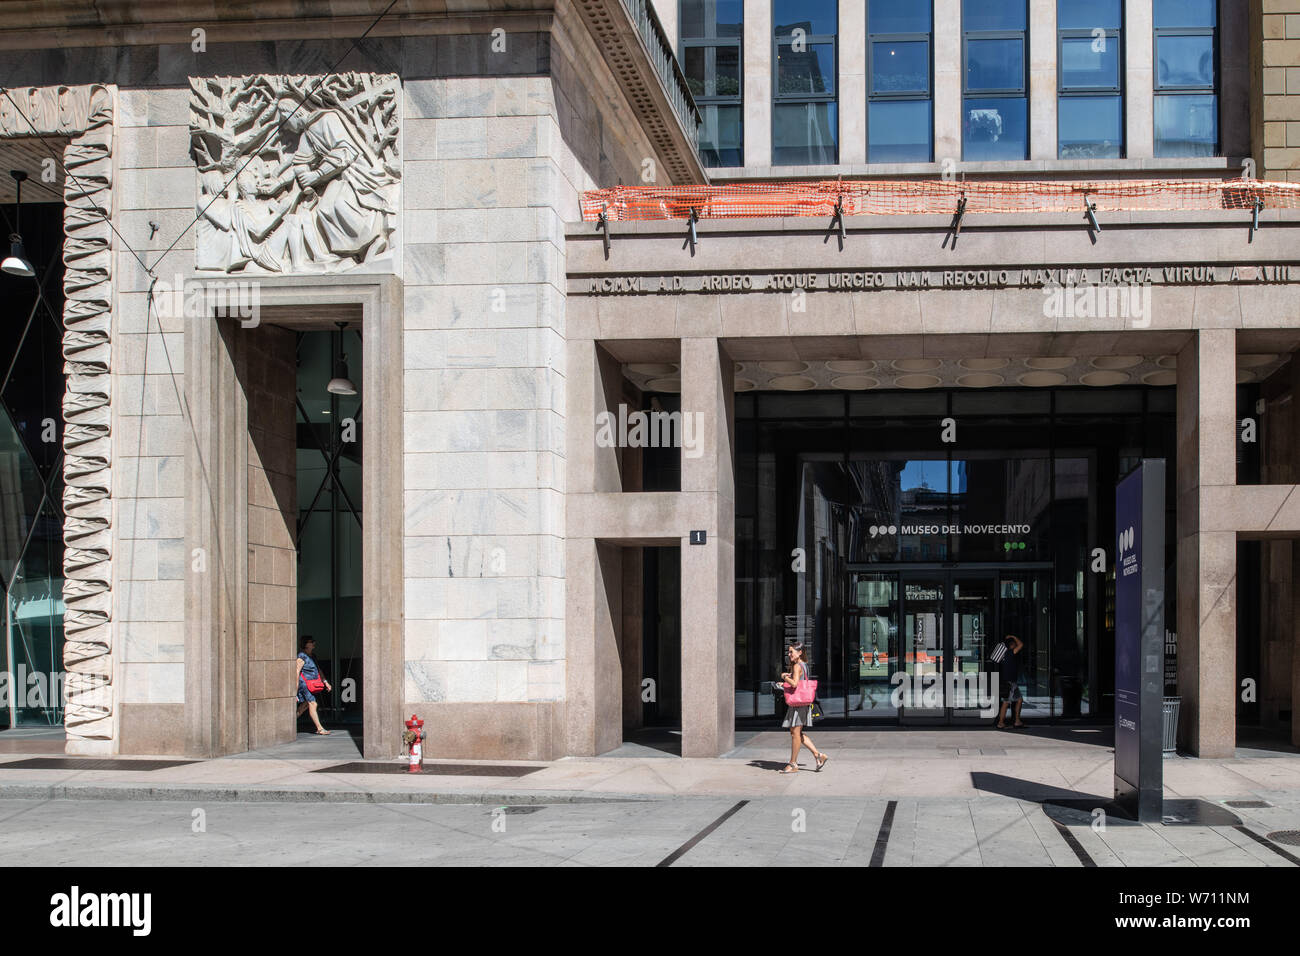 Milan, Italie - 30 juin 2019 : vue sur le bâtiment d'Arengario, Museo del Novecento Musée de 900 Banque D'Images